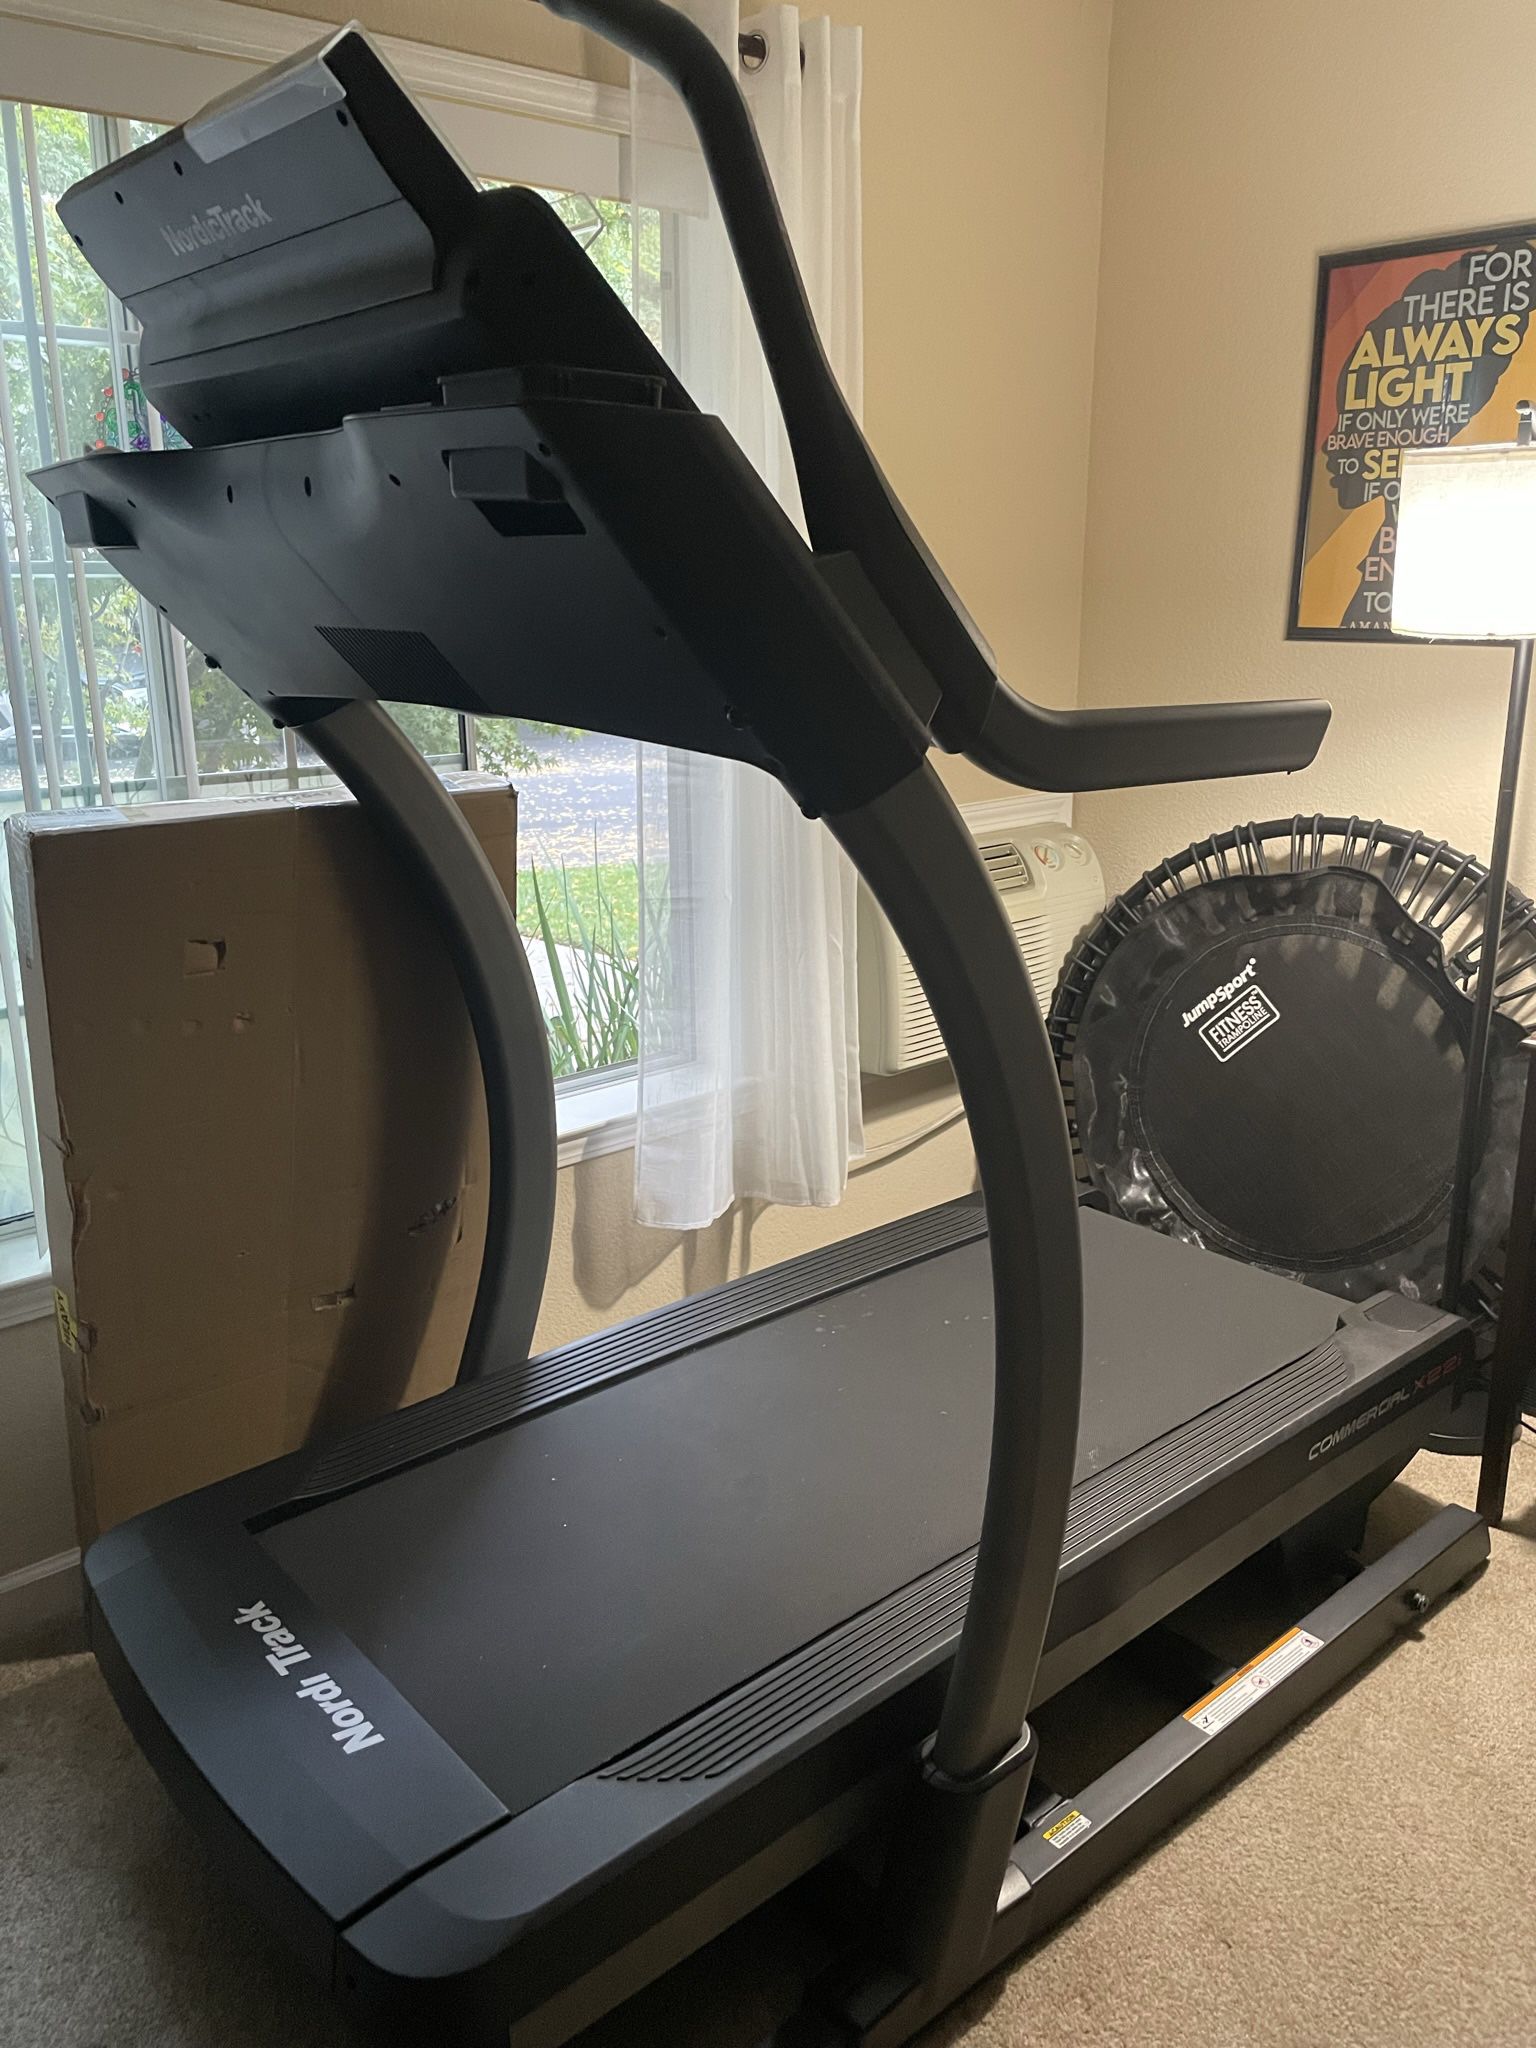 Nordictrack Commercial treadmill X22i